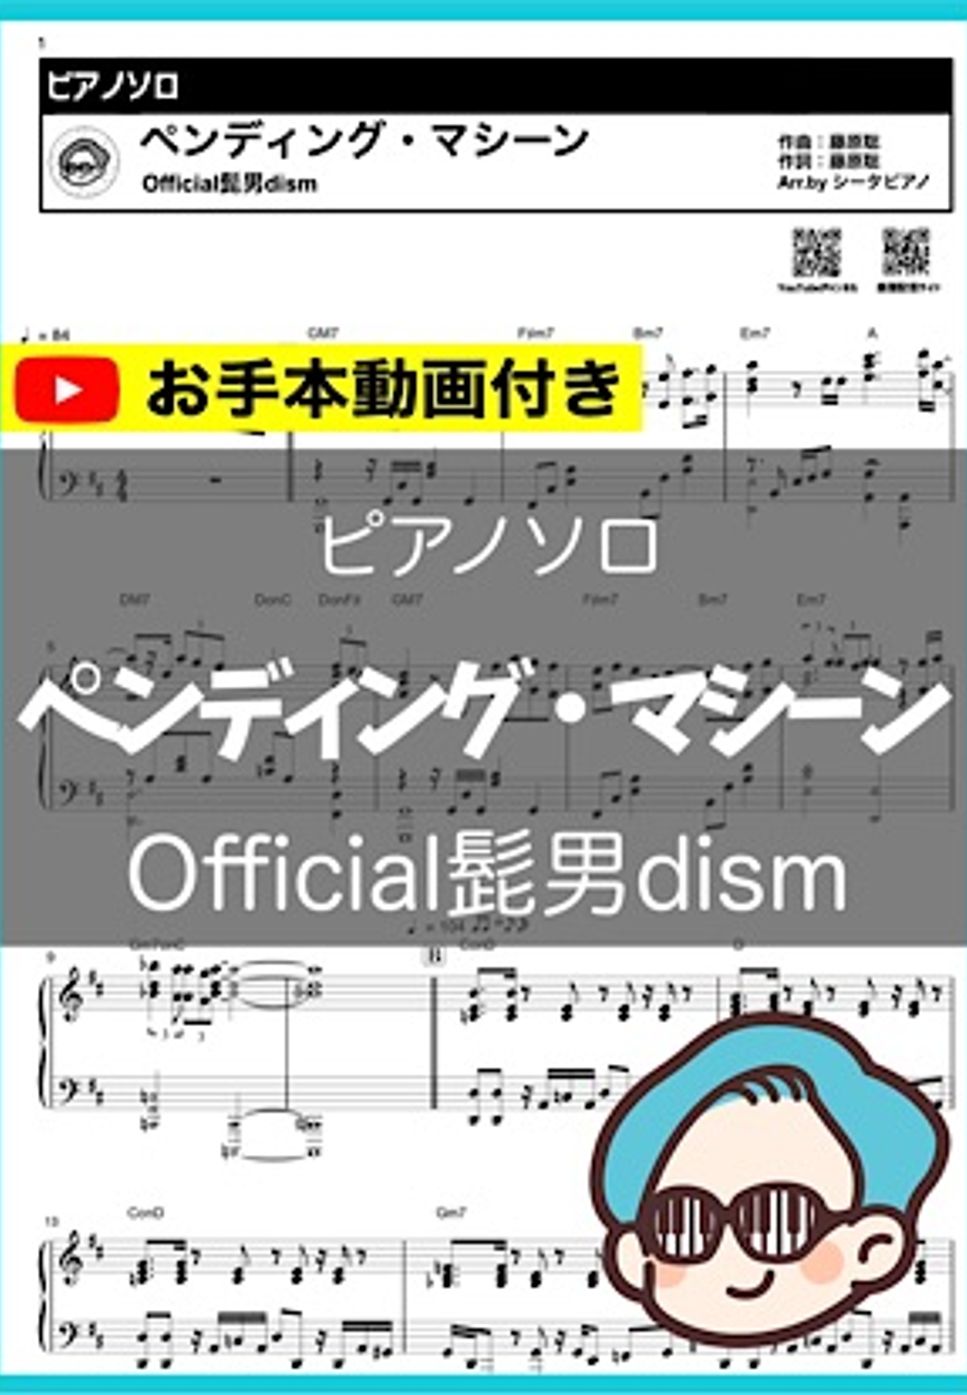 Official髭男dism - ペンディング・マシーン by シータピアノ